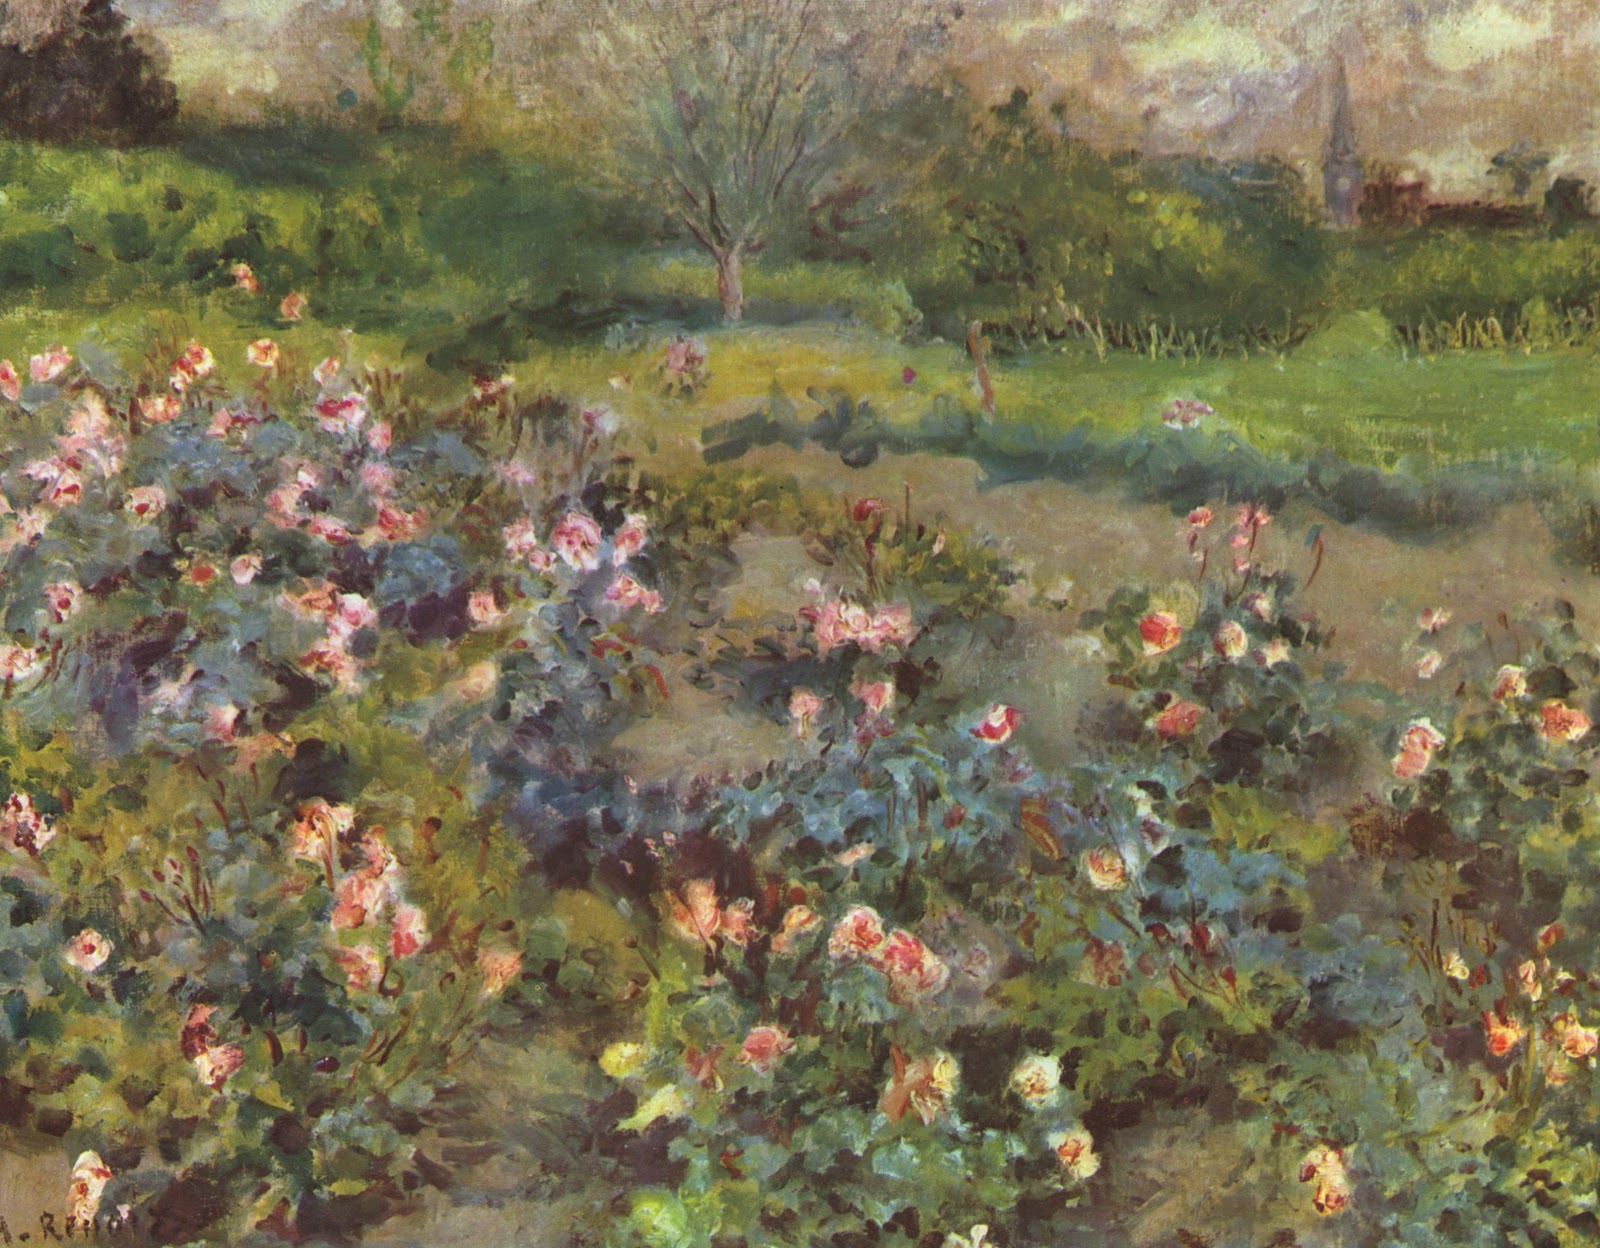 Pierre+Auguste+Renoir-1841-1-19 (721).jpg